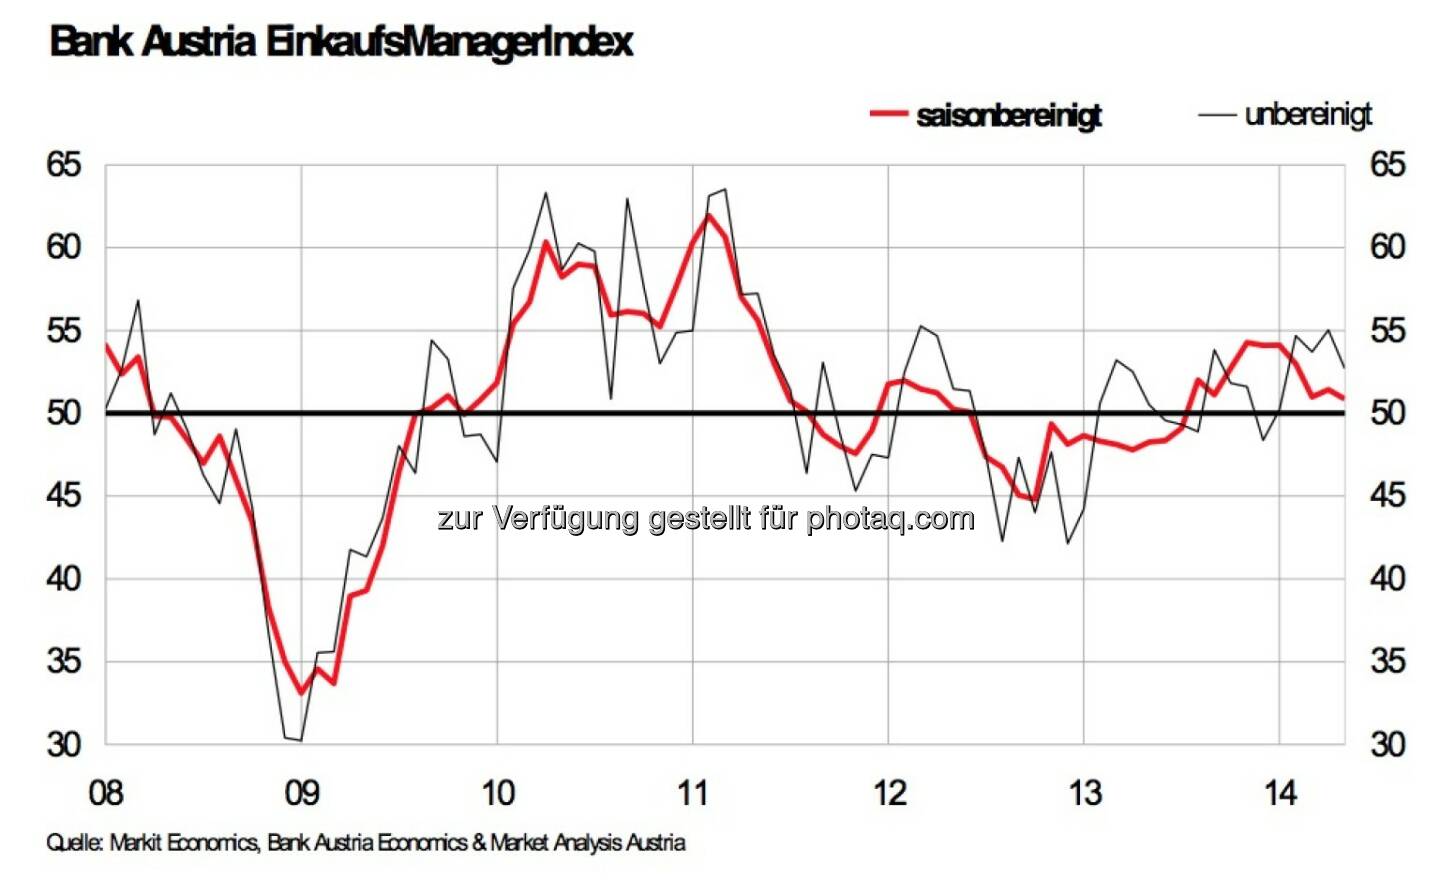 Bank Austria EinkaufsManagerIndex im Mai: Industriekonjunktur verliert weiter an Tempo, sinkt auf 10-Monats Tief, liegt jedoch weiterhin über 50 Punkte-Grenze und signalisiert damit Wachstum (Grafik: Bank Austria)